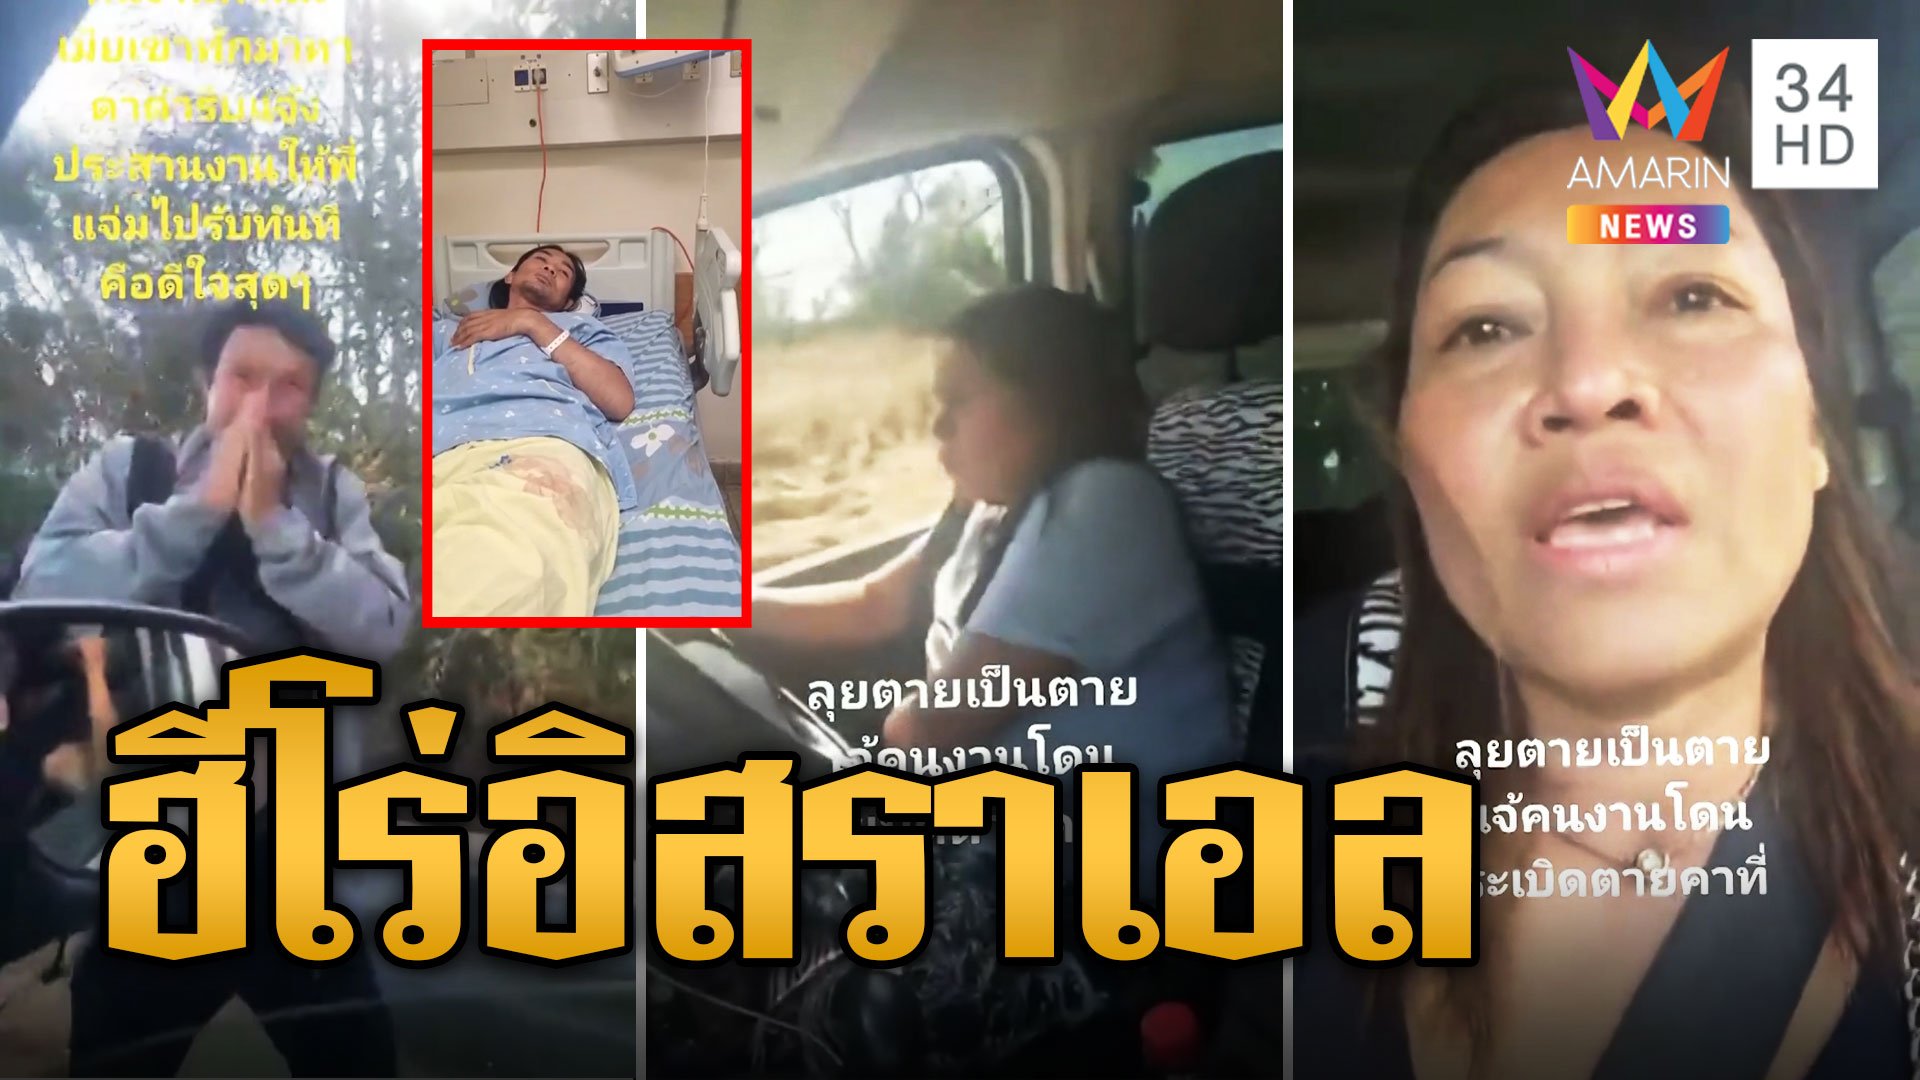 แม่แจ๋ม-แม่น้อง สาวไทยเสี่ยงชีวิตขับรถตระเวนช่วยแรงงานไทยที่บาดเจ็บส่ง รพ. | ข่าวอรุณอมรินทร์ | 17 ต.ค. 66 | AMARIN TVHD34